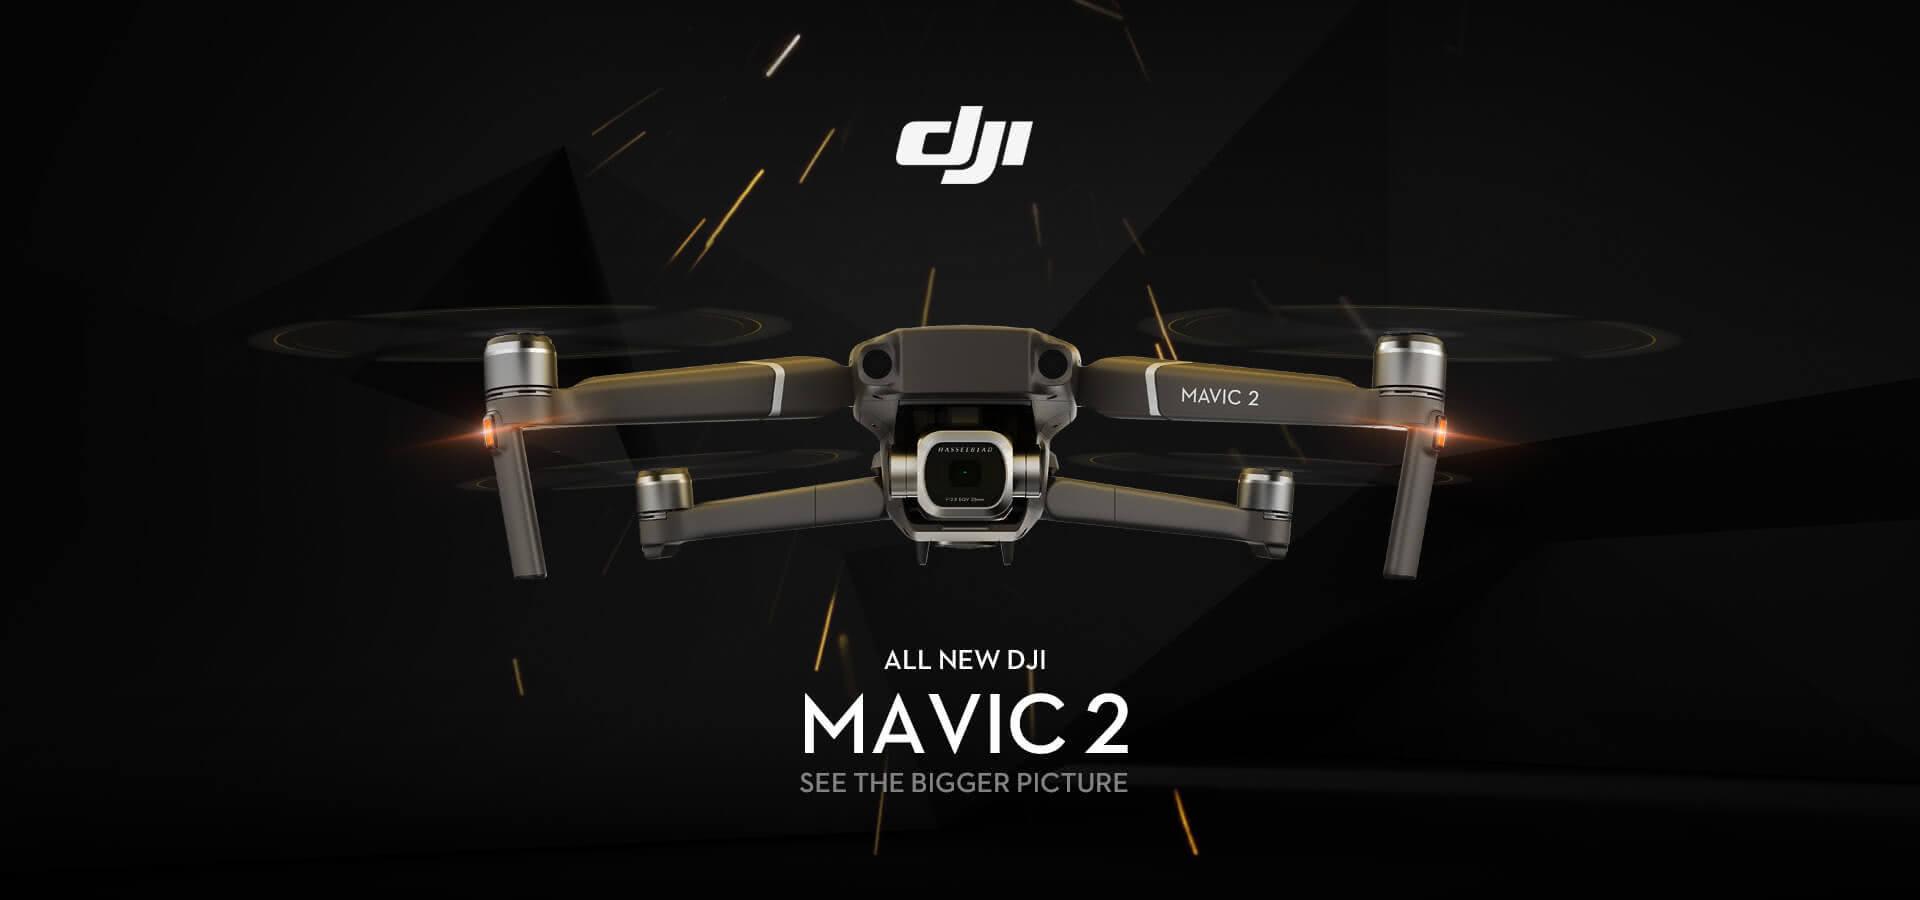 Mavic 2. See the Bigger Picture